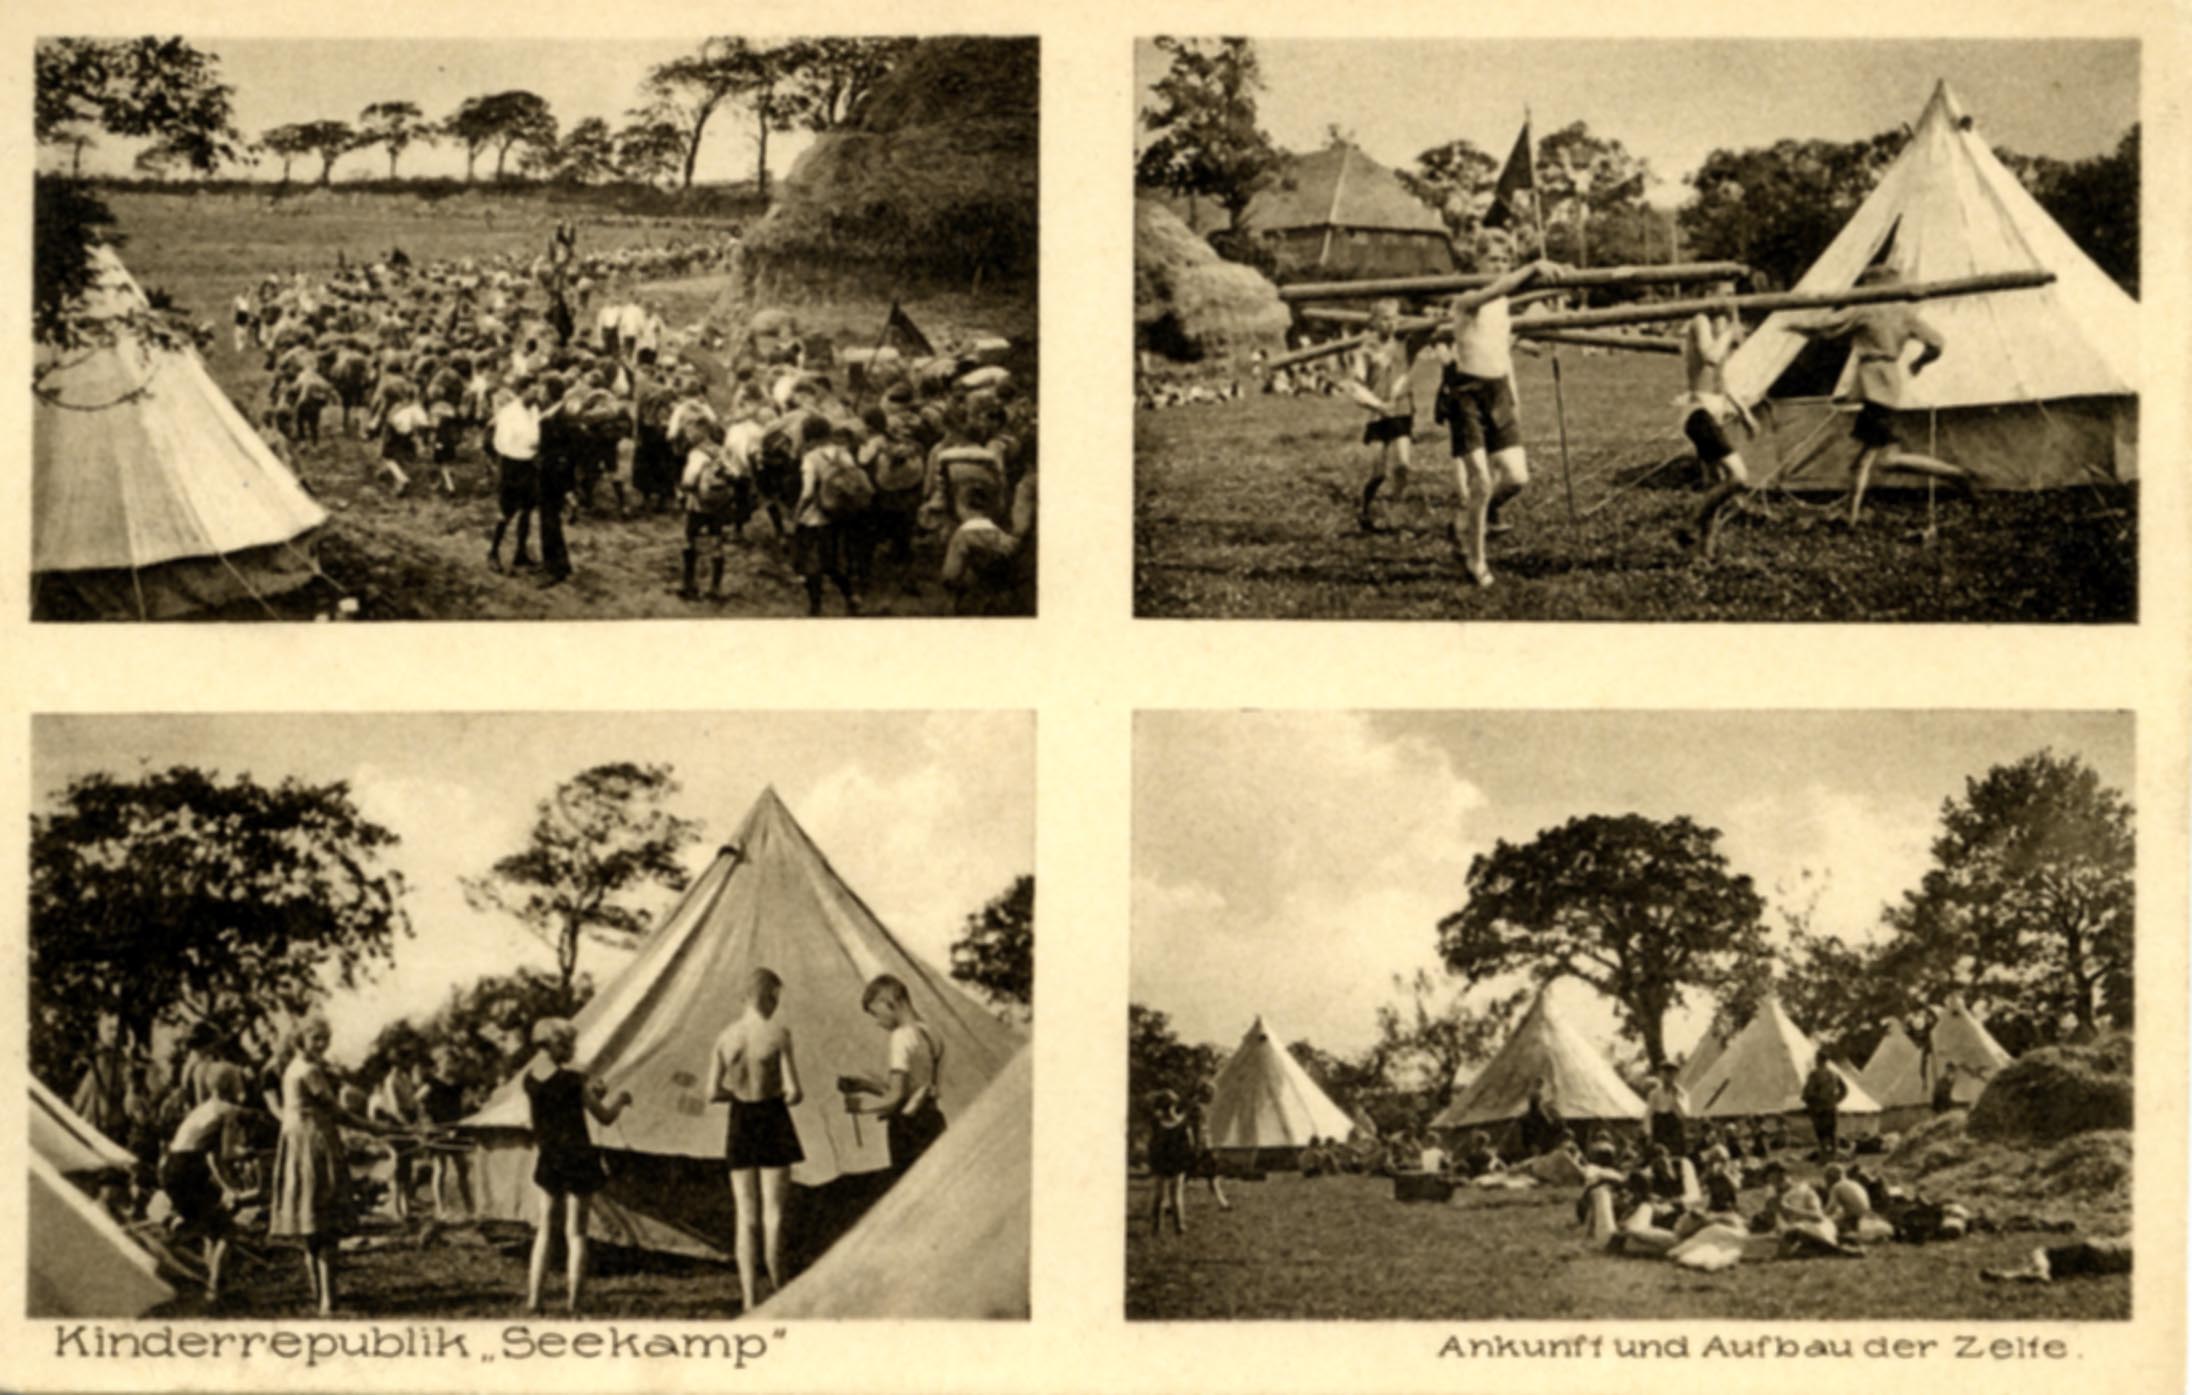 Postkarte mit vier Fotos in Sepia von der Kinderrepublik Seekamp 1927, auf denen Ankunft und Aufbau der Zelte dargestellt sind. AdsD 6/FOTB057288 .